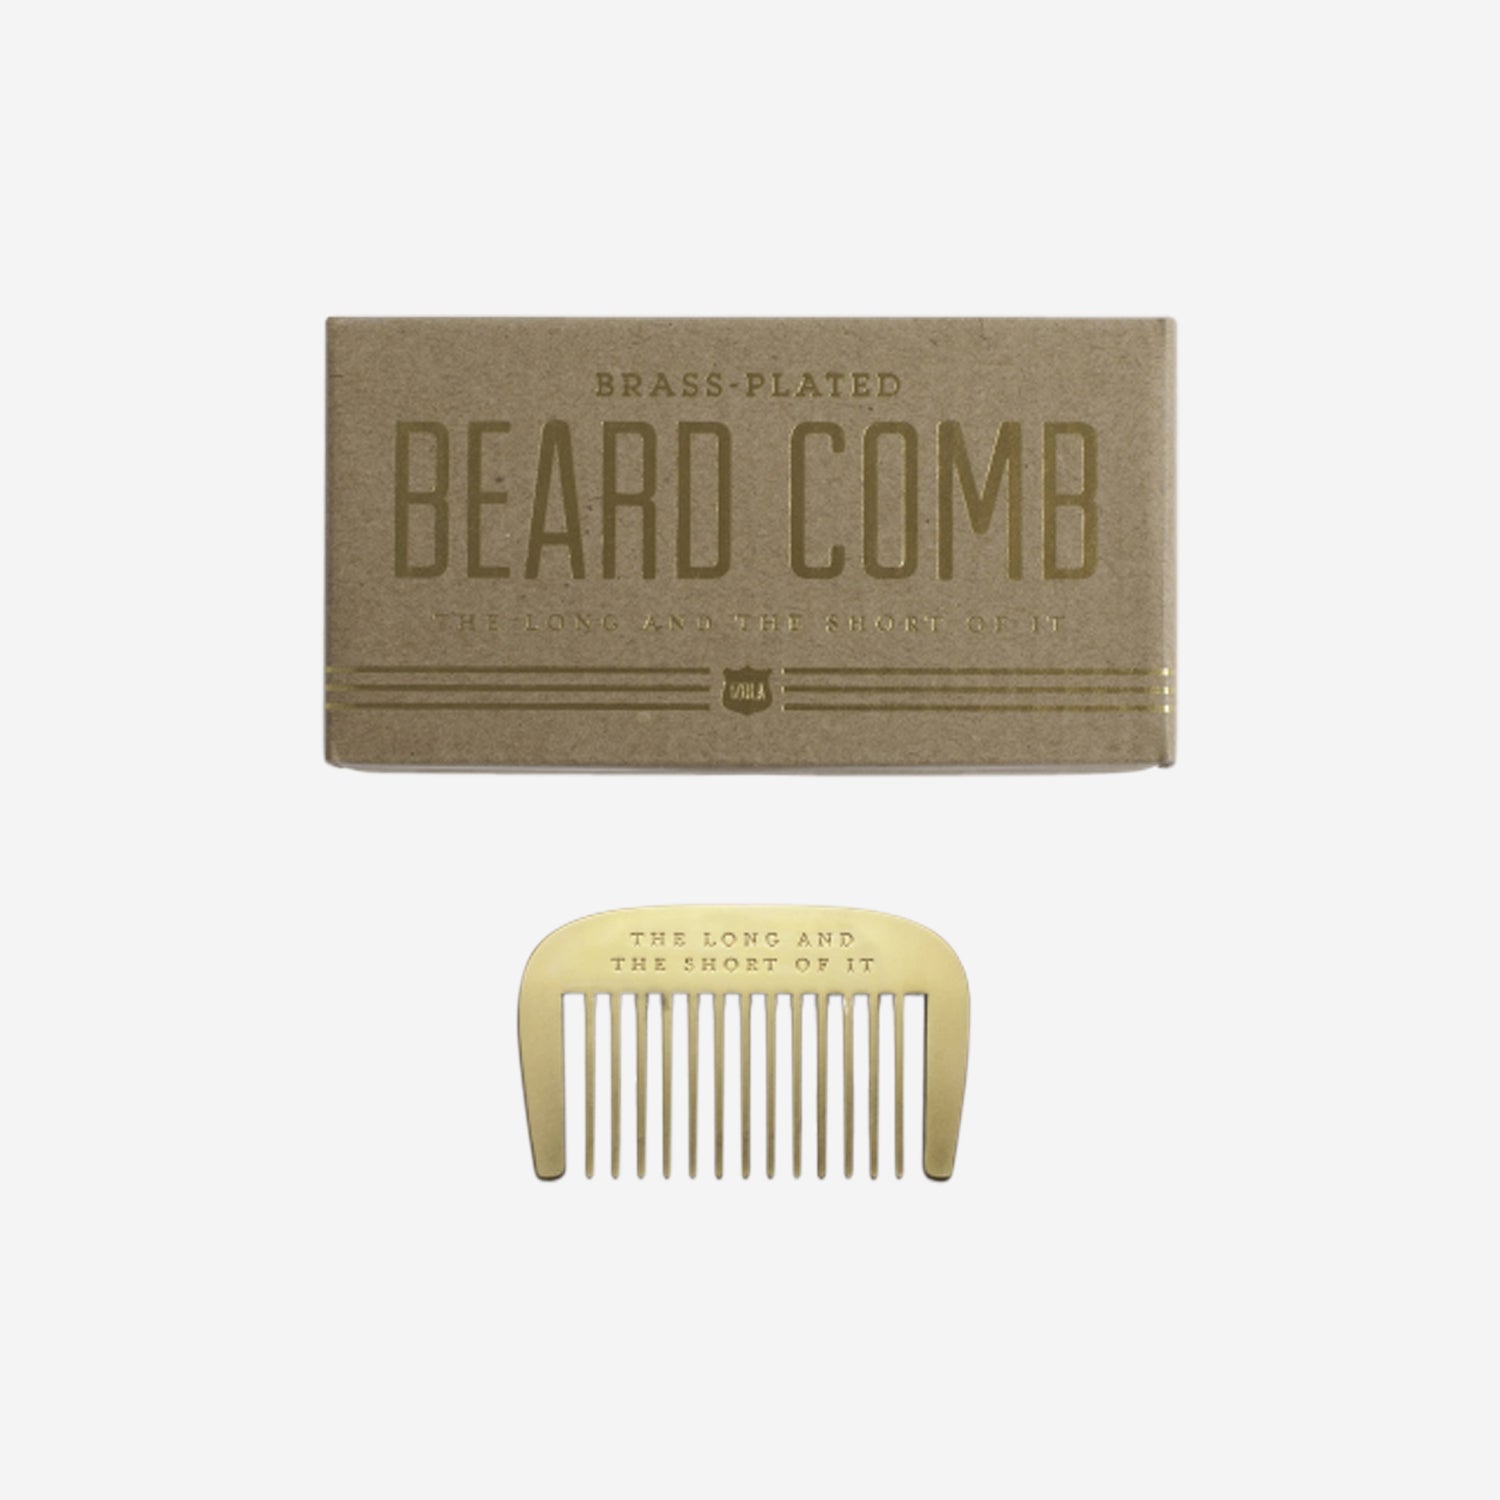 The Long & Short of it Beard Comb